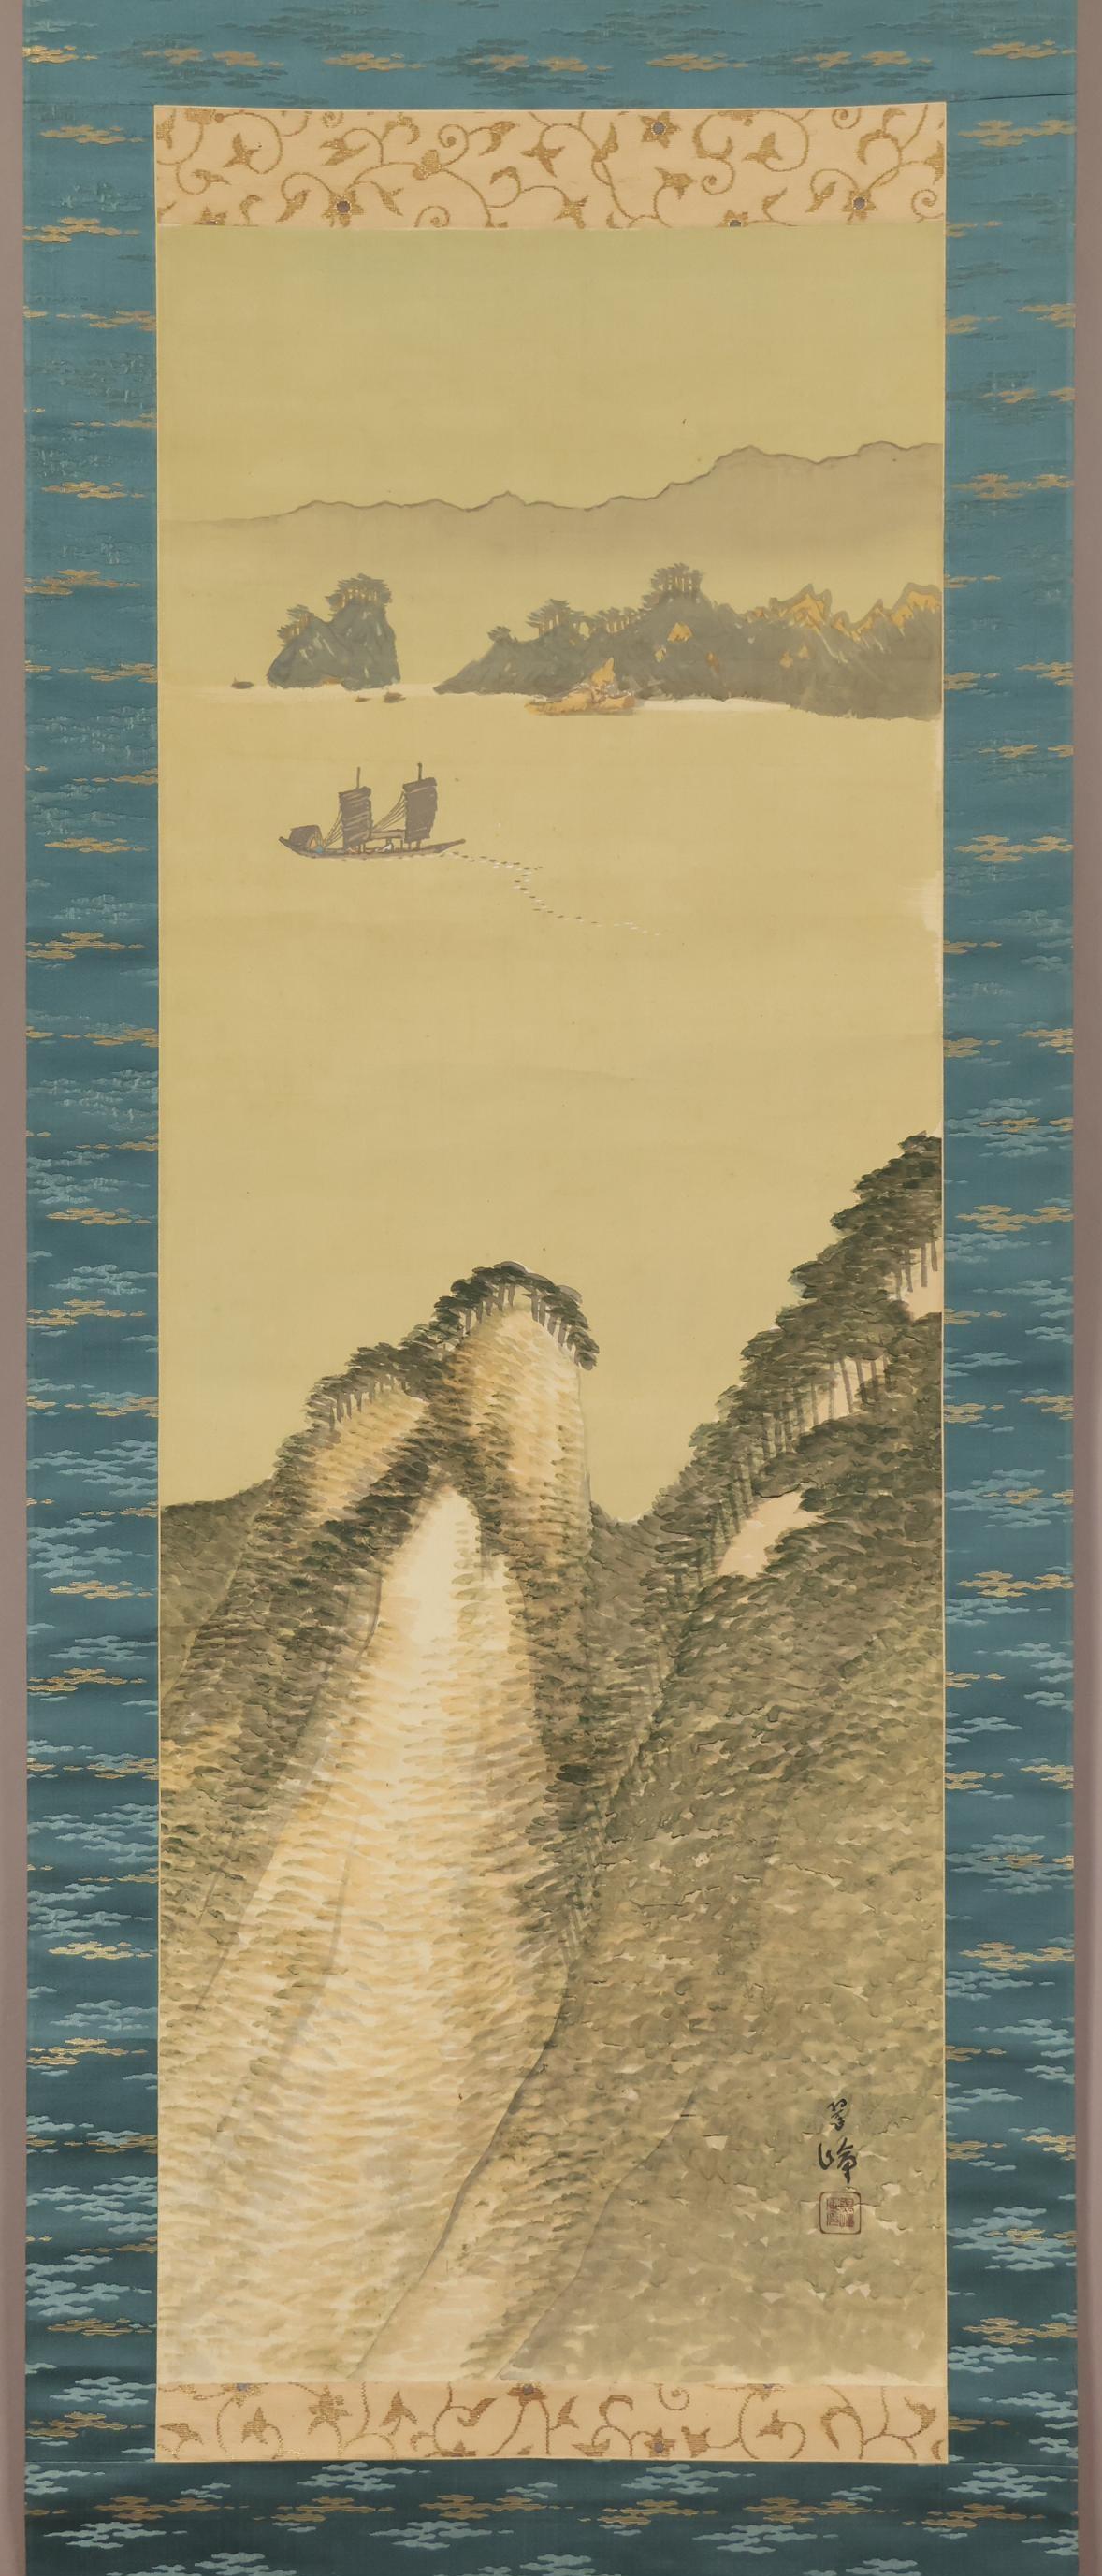 [Authentisches Werk] ◆ Suisho Nishiyama ◆ Landschaft ◆ Japanische Malerei ◆ Kyoto ◆ Meister: Seiho Takeuchi ◆ Handbemalt ◆ Seidenband ◆ Hängende Schriftrolle ◆ Suisho Nishiyama

Suisho Nishiyama
(Kunstjahrbuch, geschätzter Wert 8 Millionen Yen)
1879